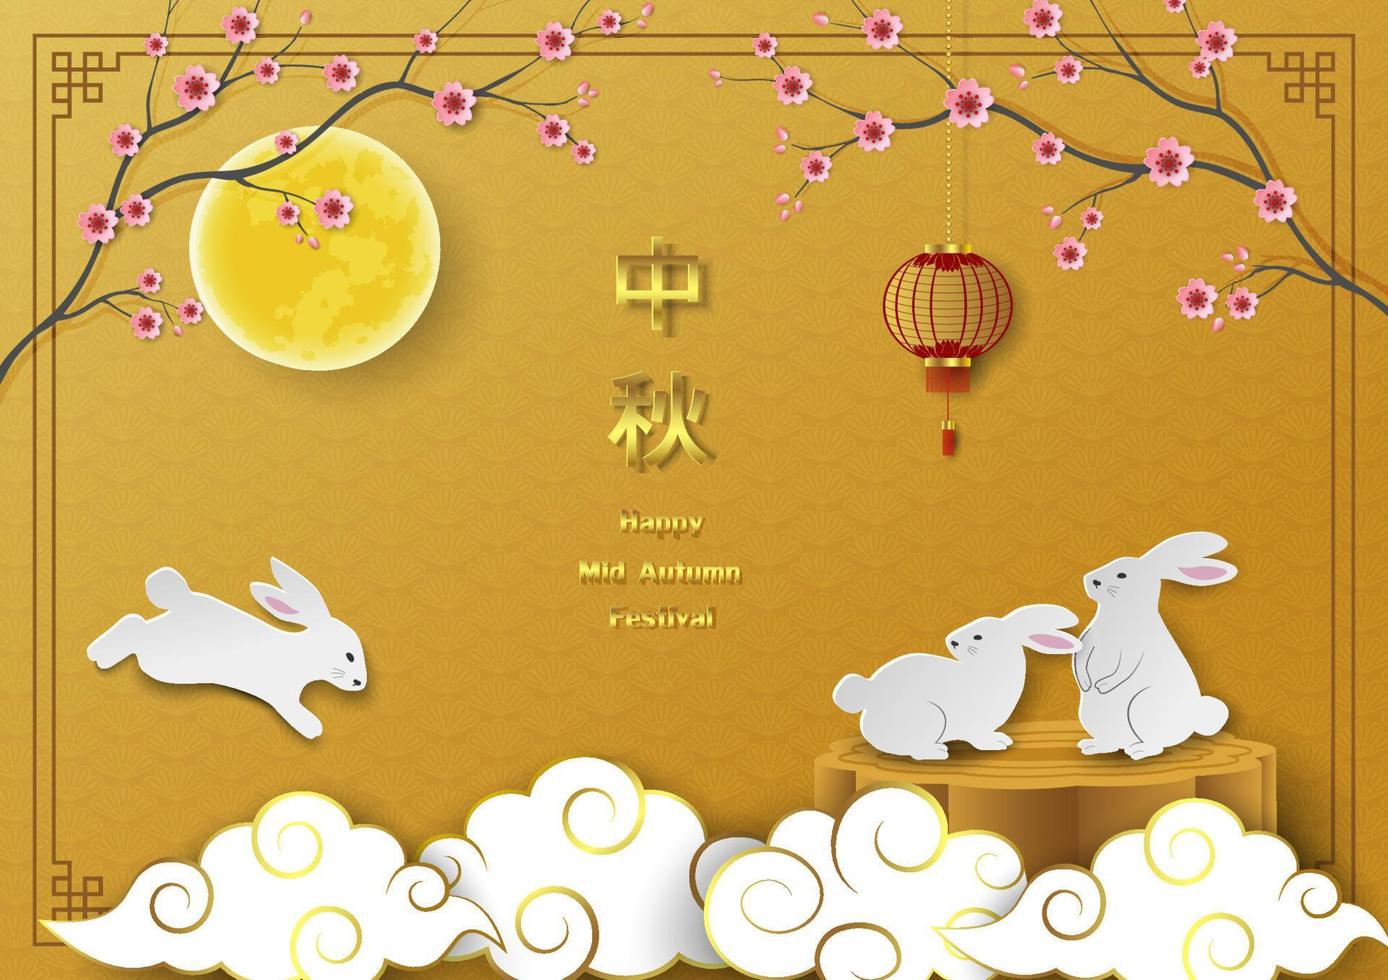 festival di metà autunno, tema celebrativo con simpatici conigli, luna piena, lanterna, fiori di ciliegio e torta di luna su sfondo cinese vettore